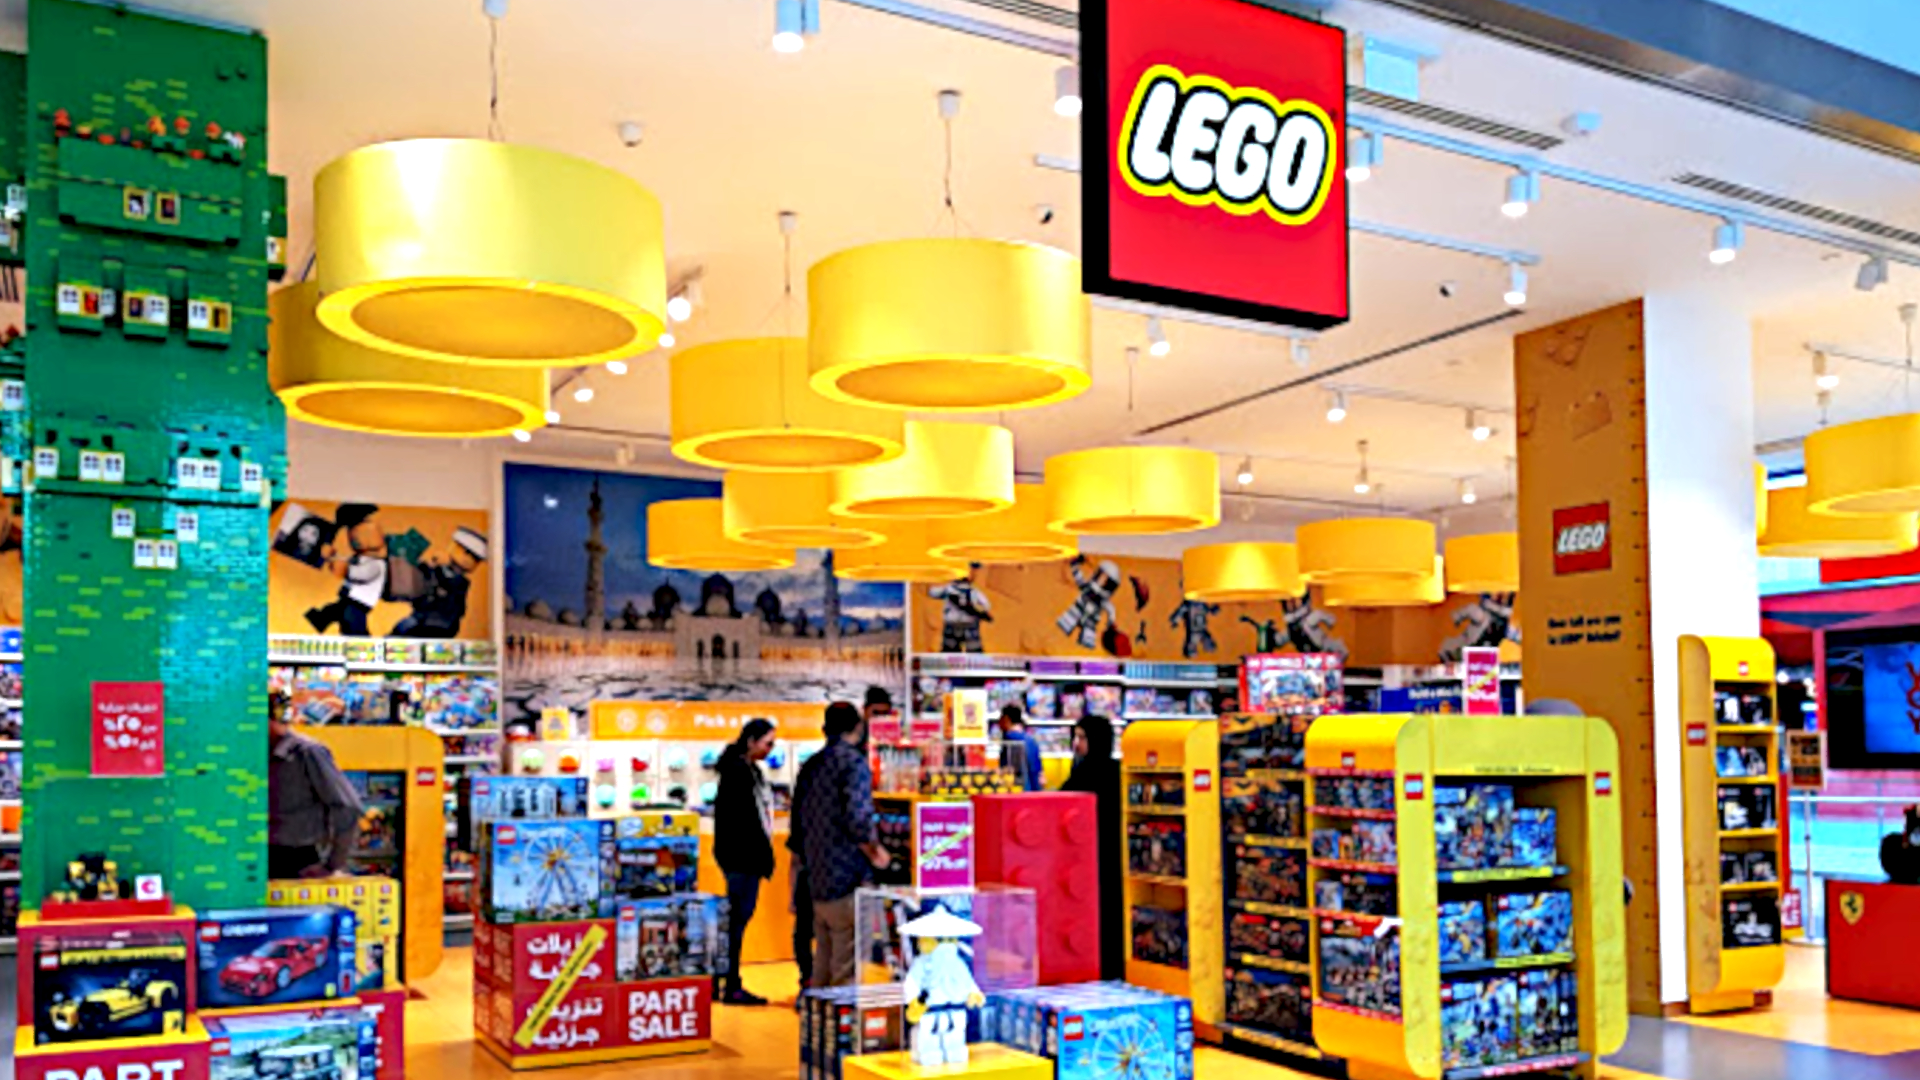 Lego, Yas Mall, Abu Dhabi - Royal Crystal Al Malaki